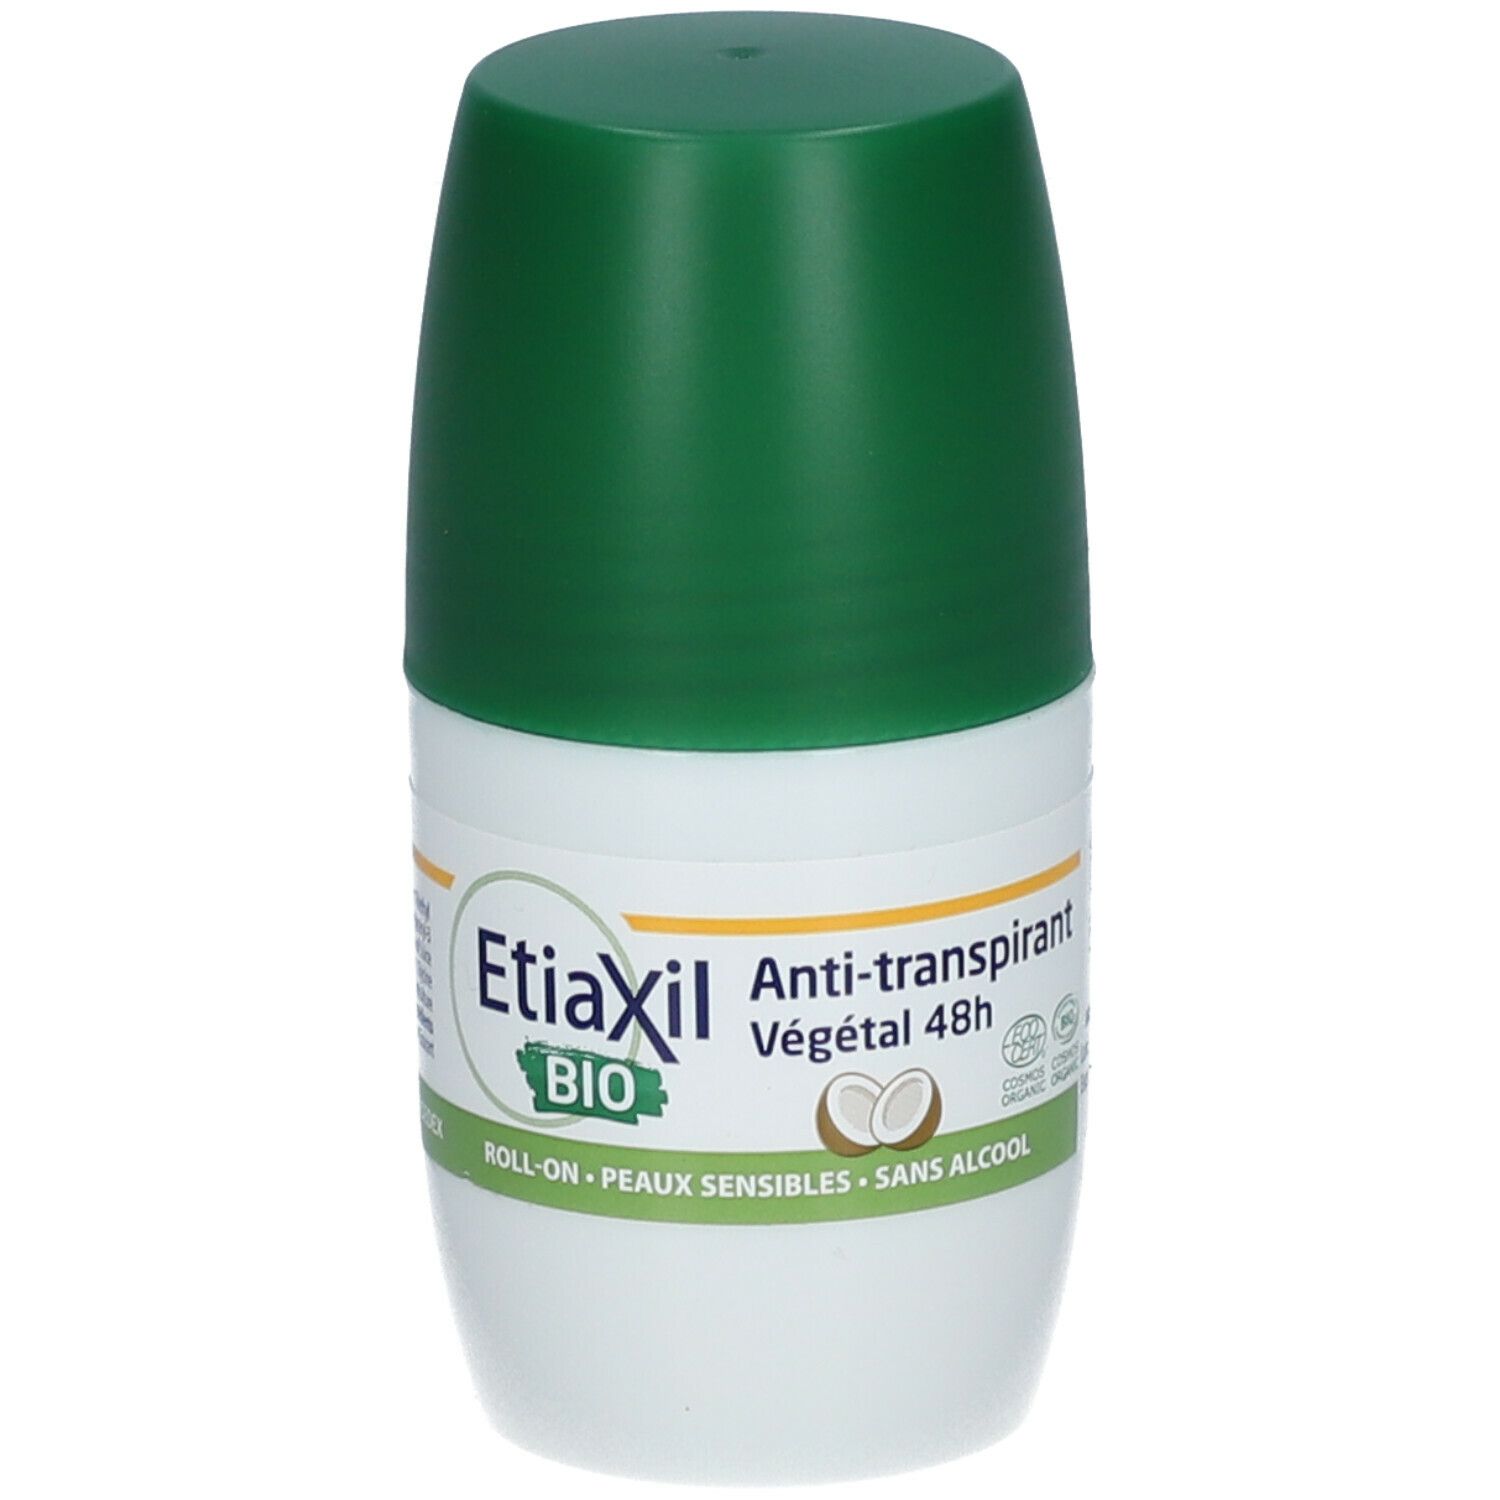 EtiaXil Bio Peaux Sensibles Déodorant Anti-transpirant Végétal 48 h Coco certifié BIO Roll'on